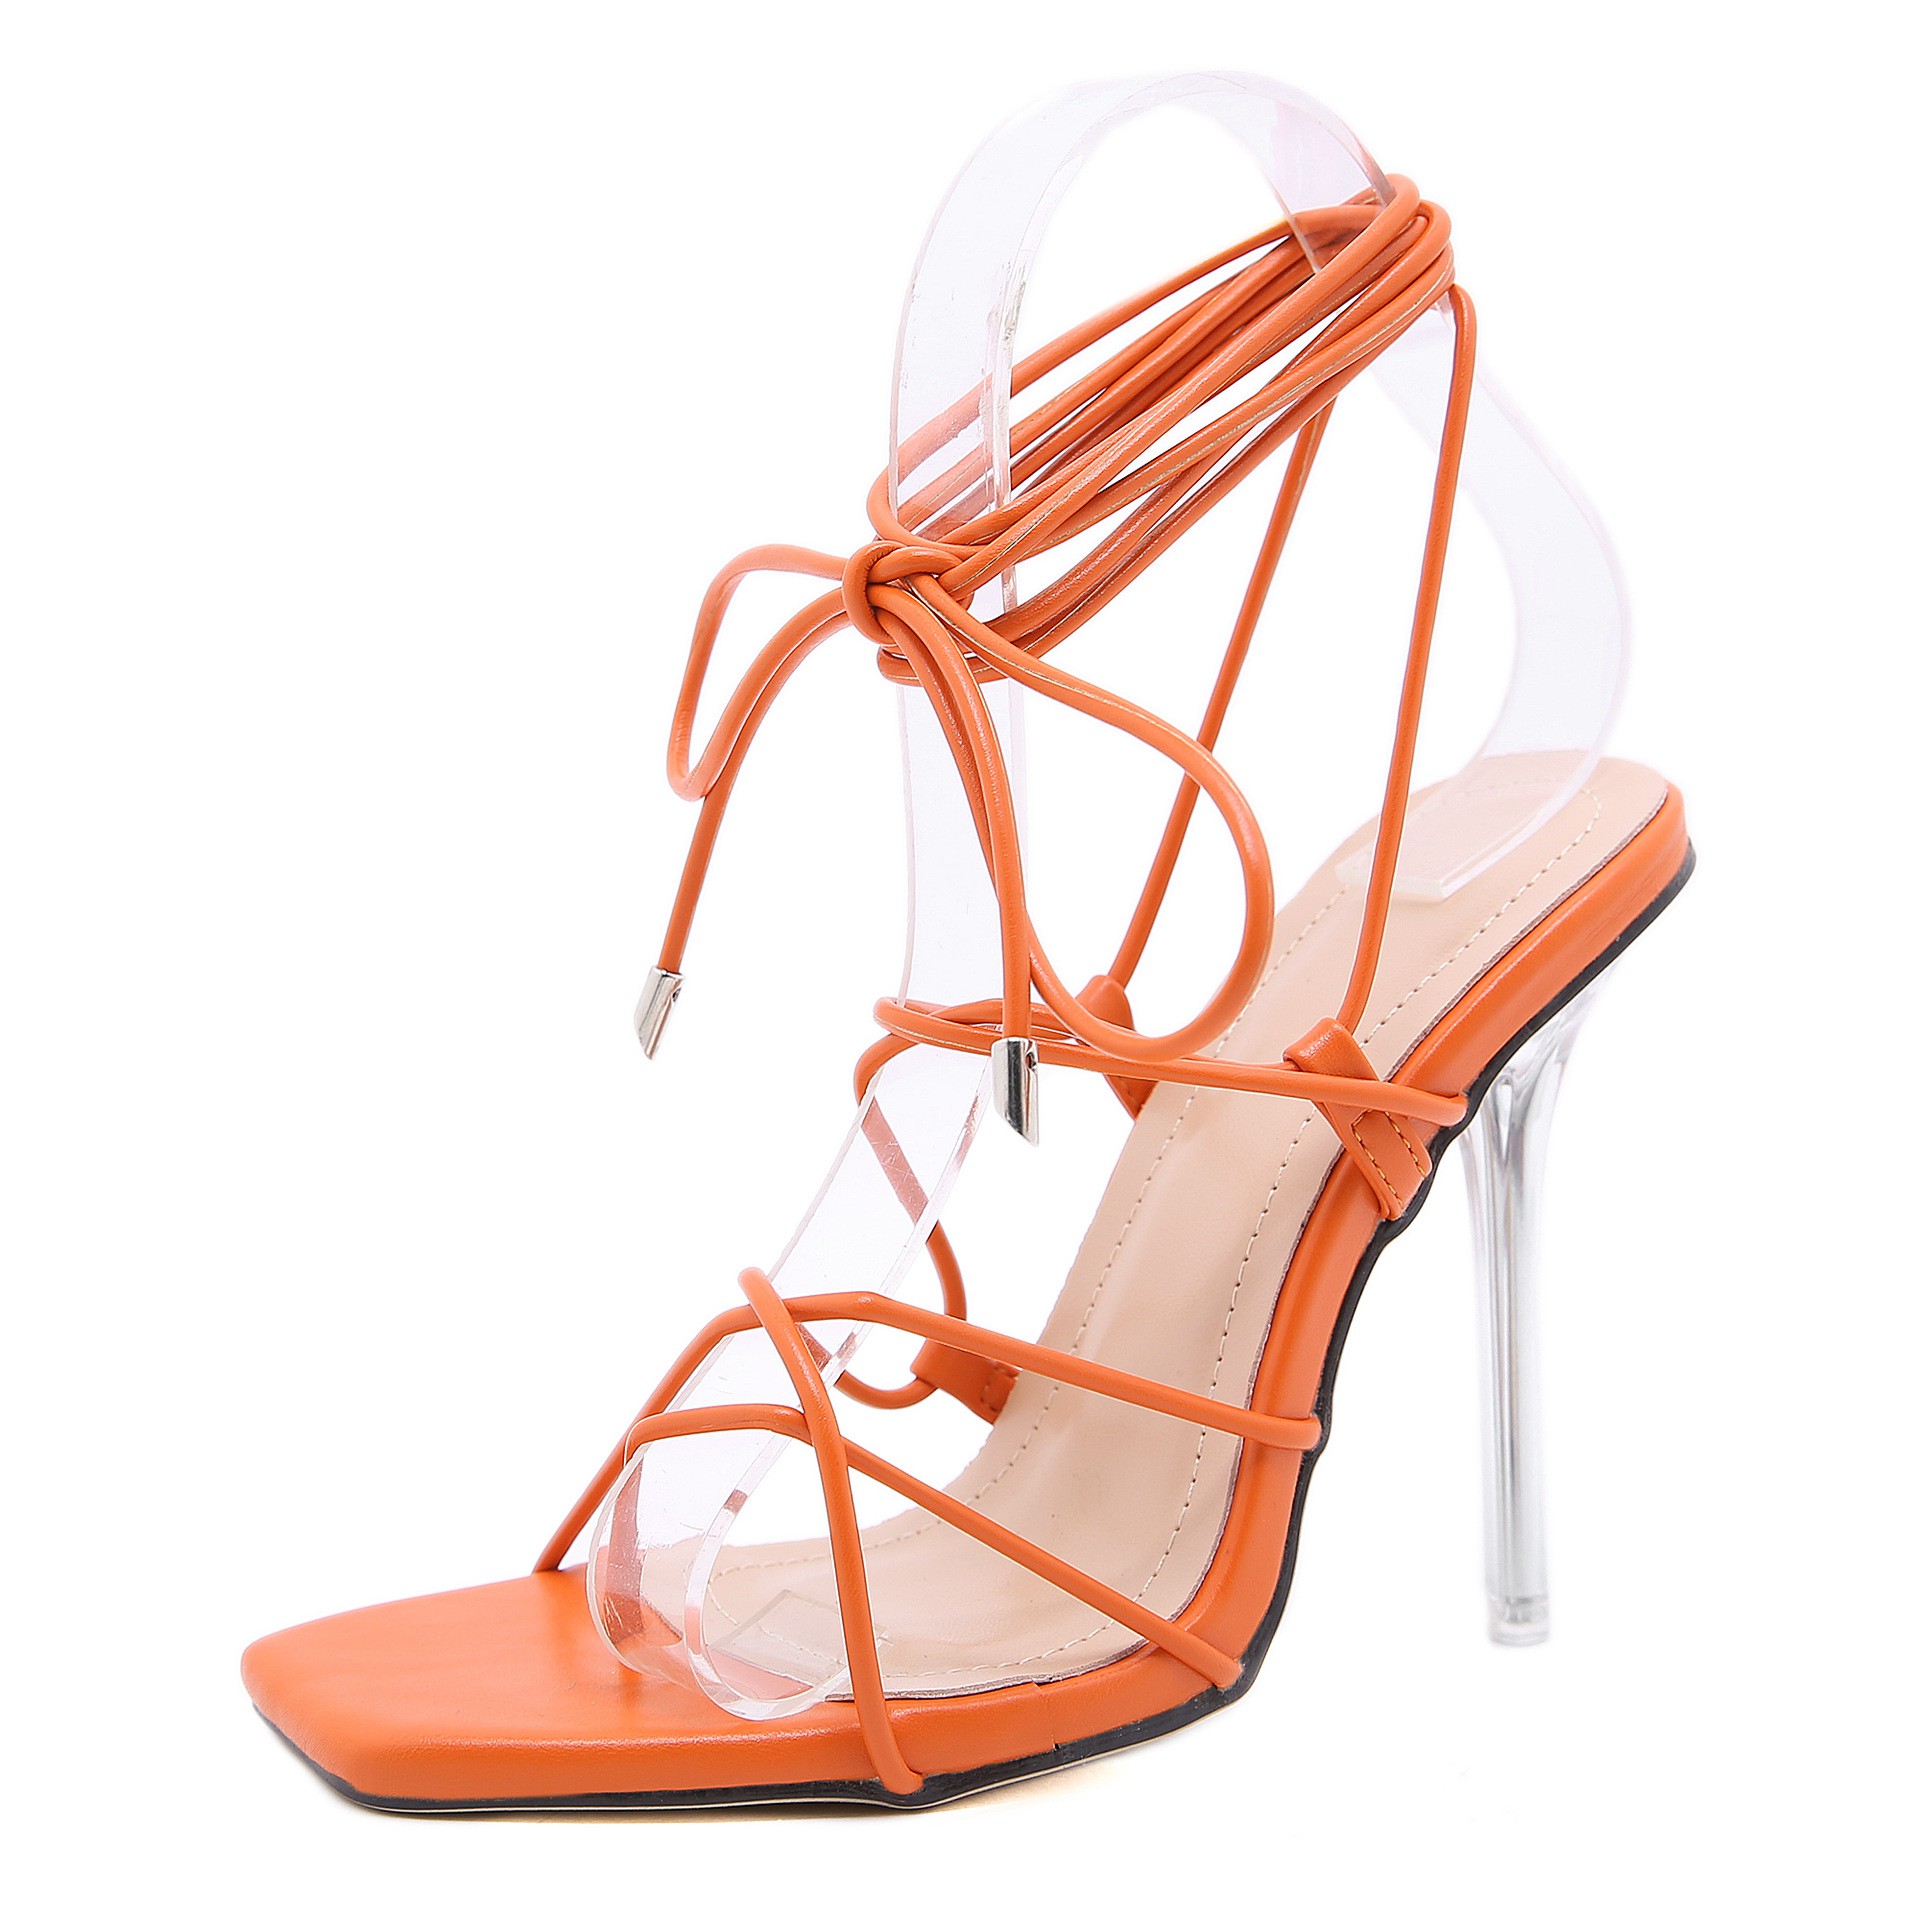 Cross strap stiletto heels